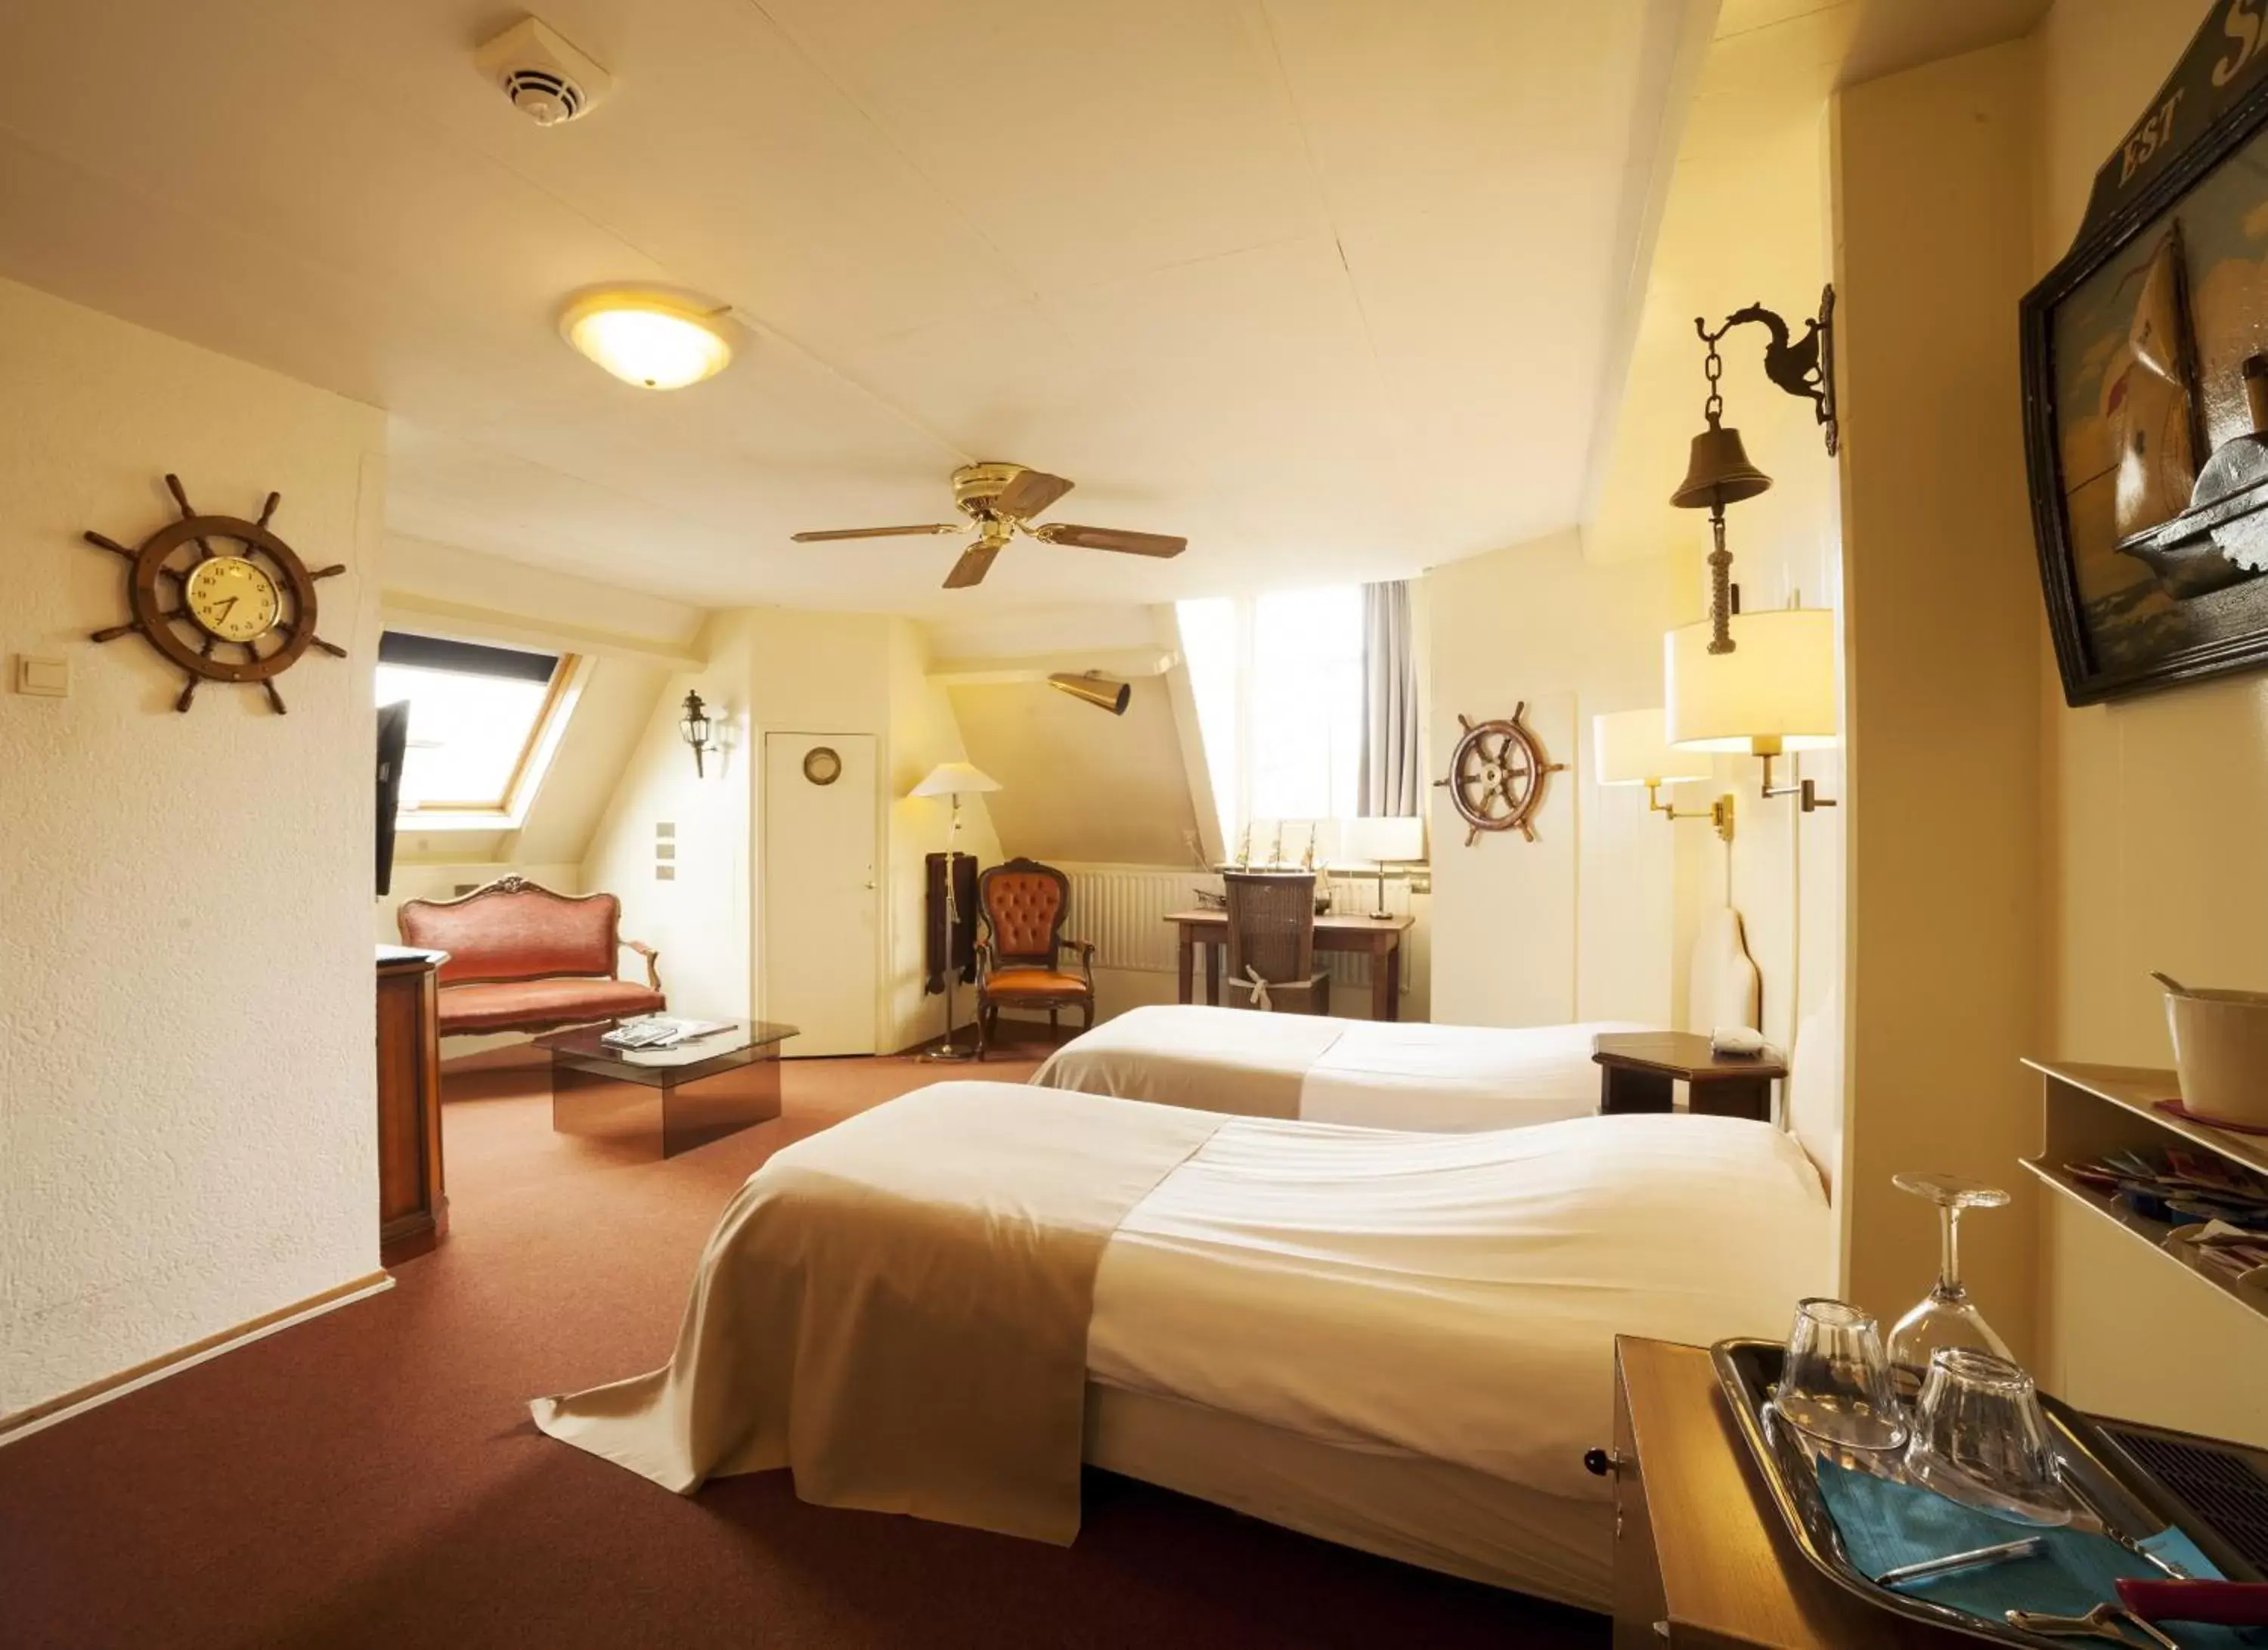 Bed in Hotel Dordrecht